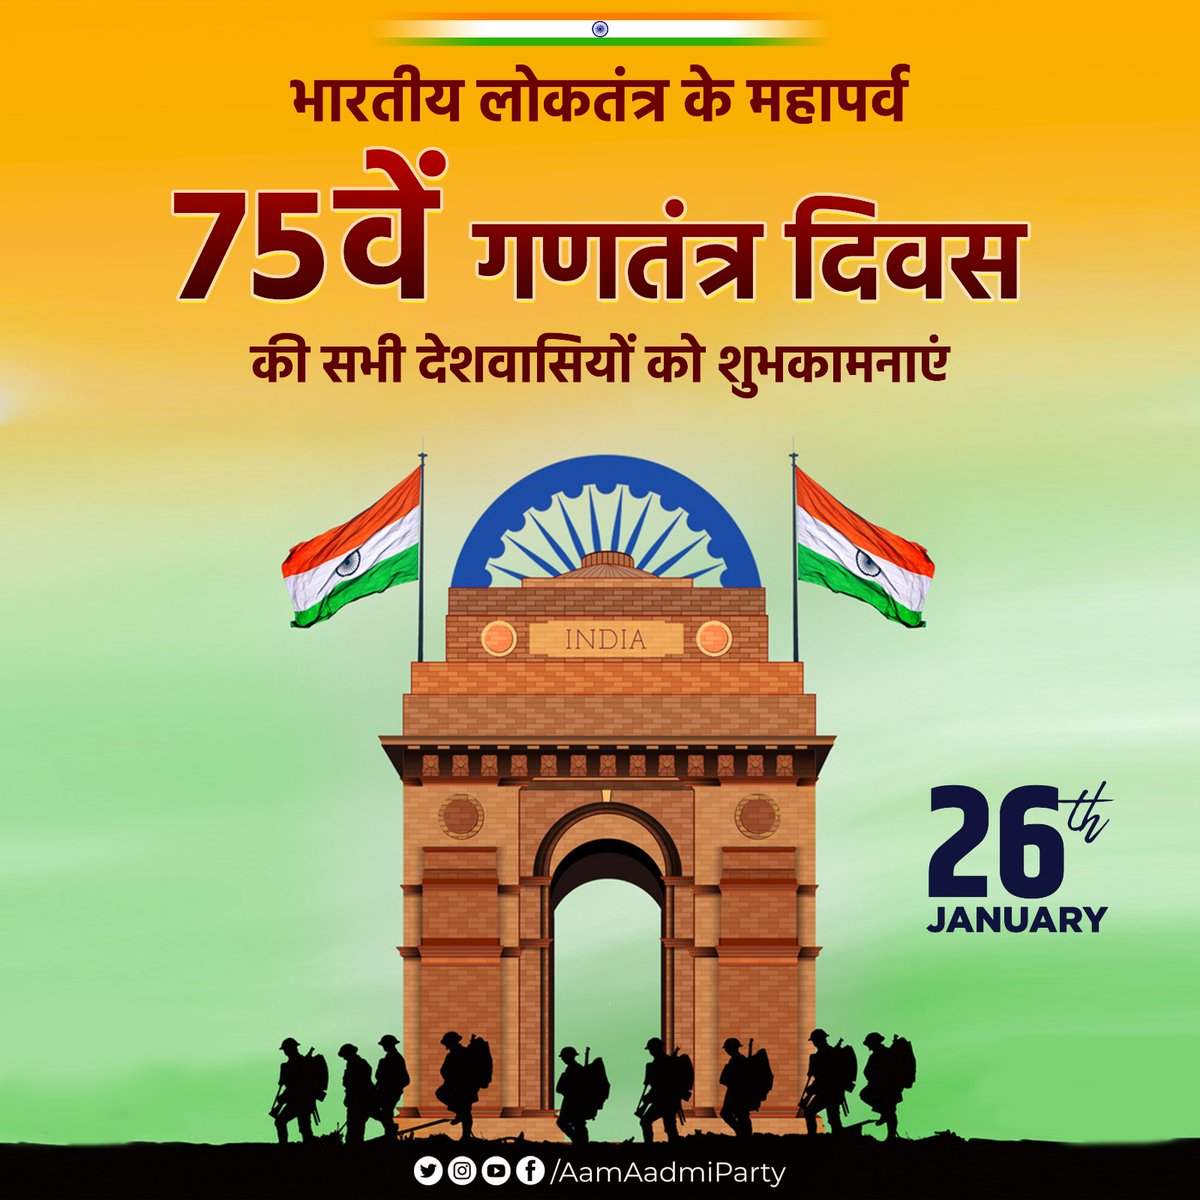 समस्त देशवासियों को 75वें गणतंत्र दिवस की हार्दिक शुभकामनाएँ। आइये इस शुभ अवसर पर यह संकल्प लें कि हम सब मिलकर अपने संविधान की रक्षा करेंगे। जय हिंद 🇮🇳 #HappyRepublicDay